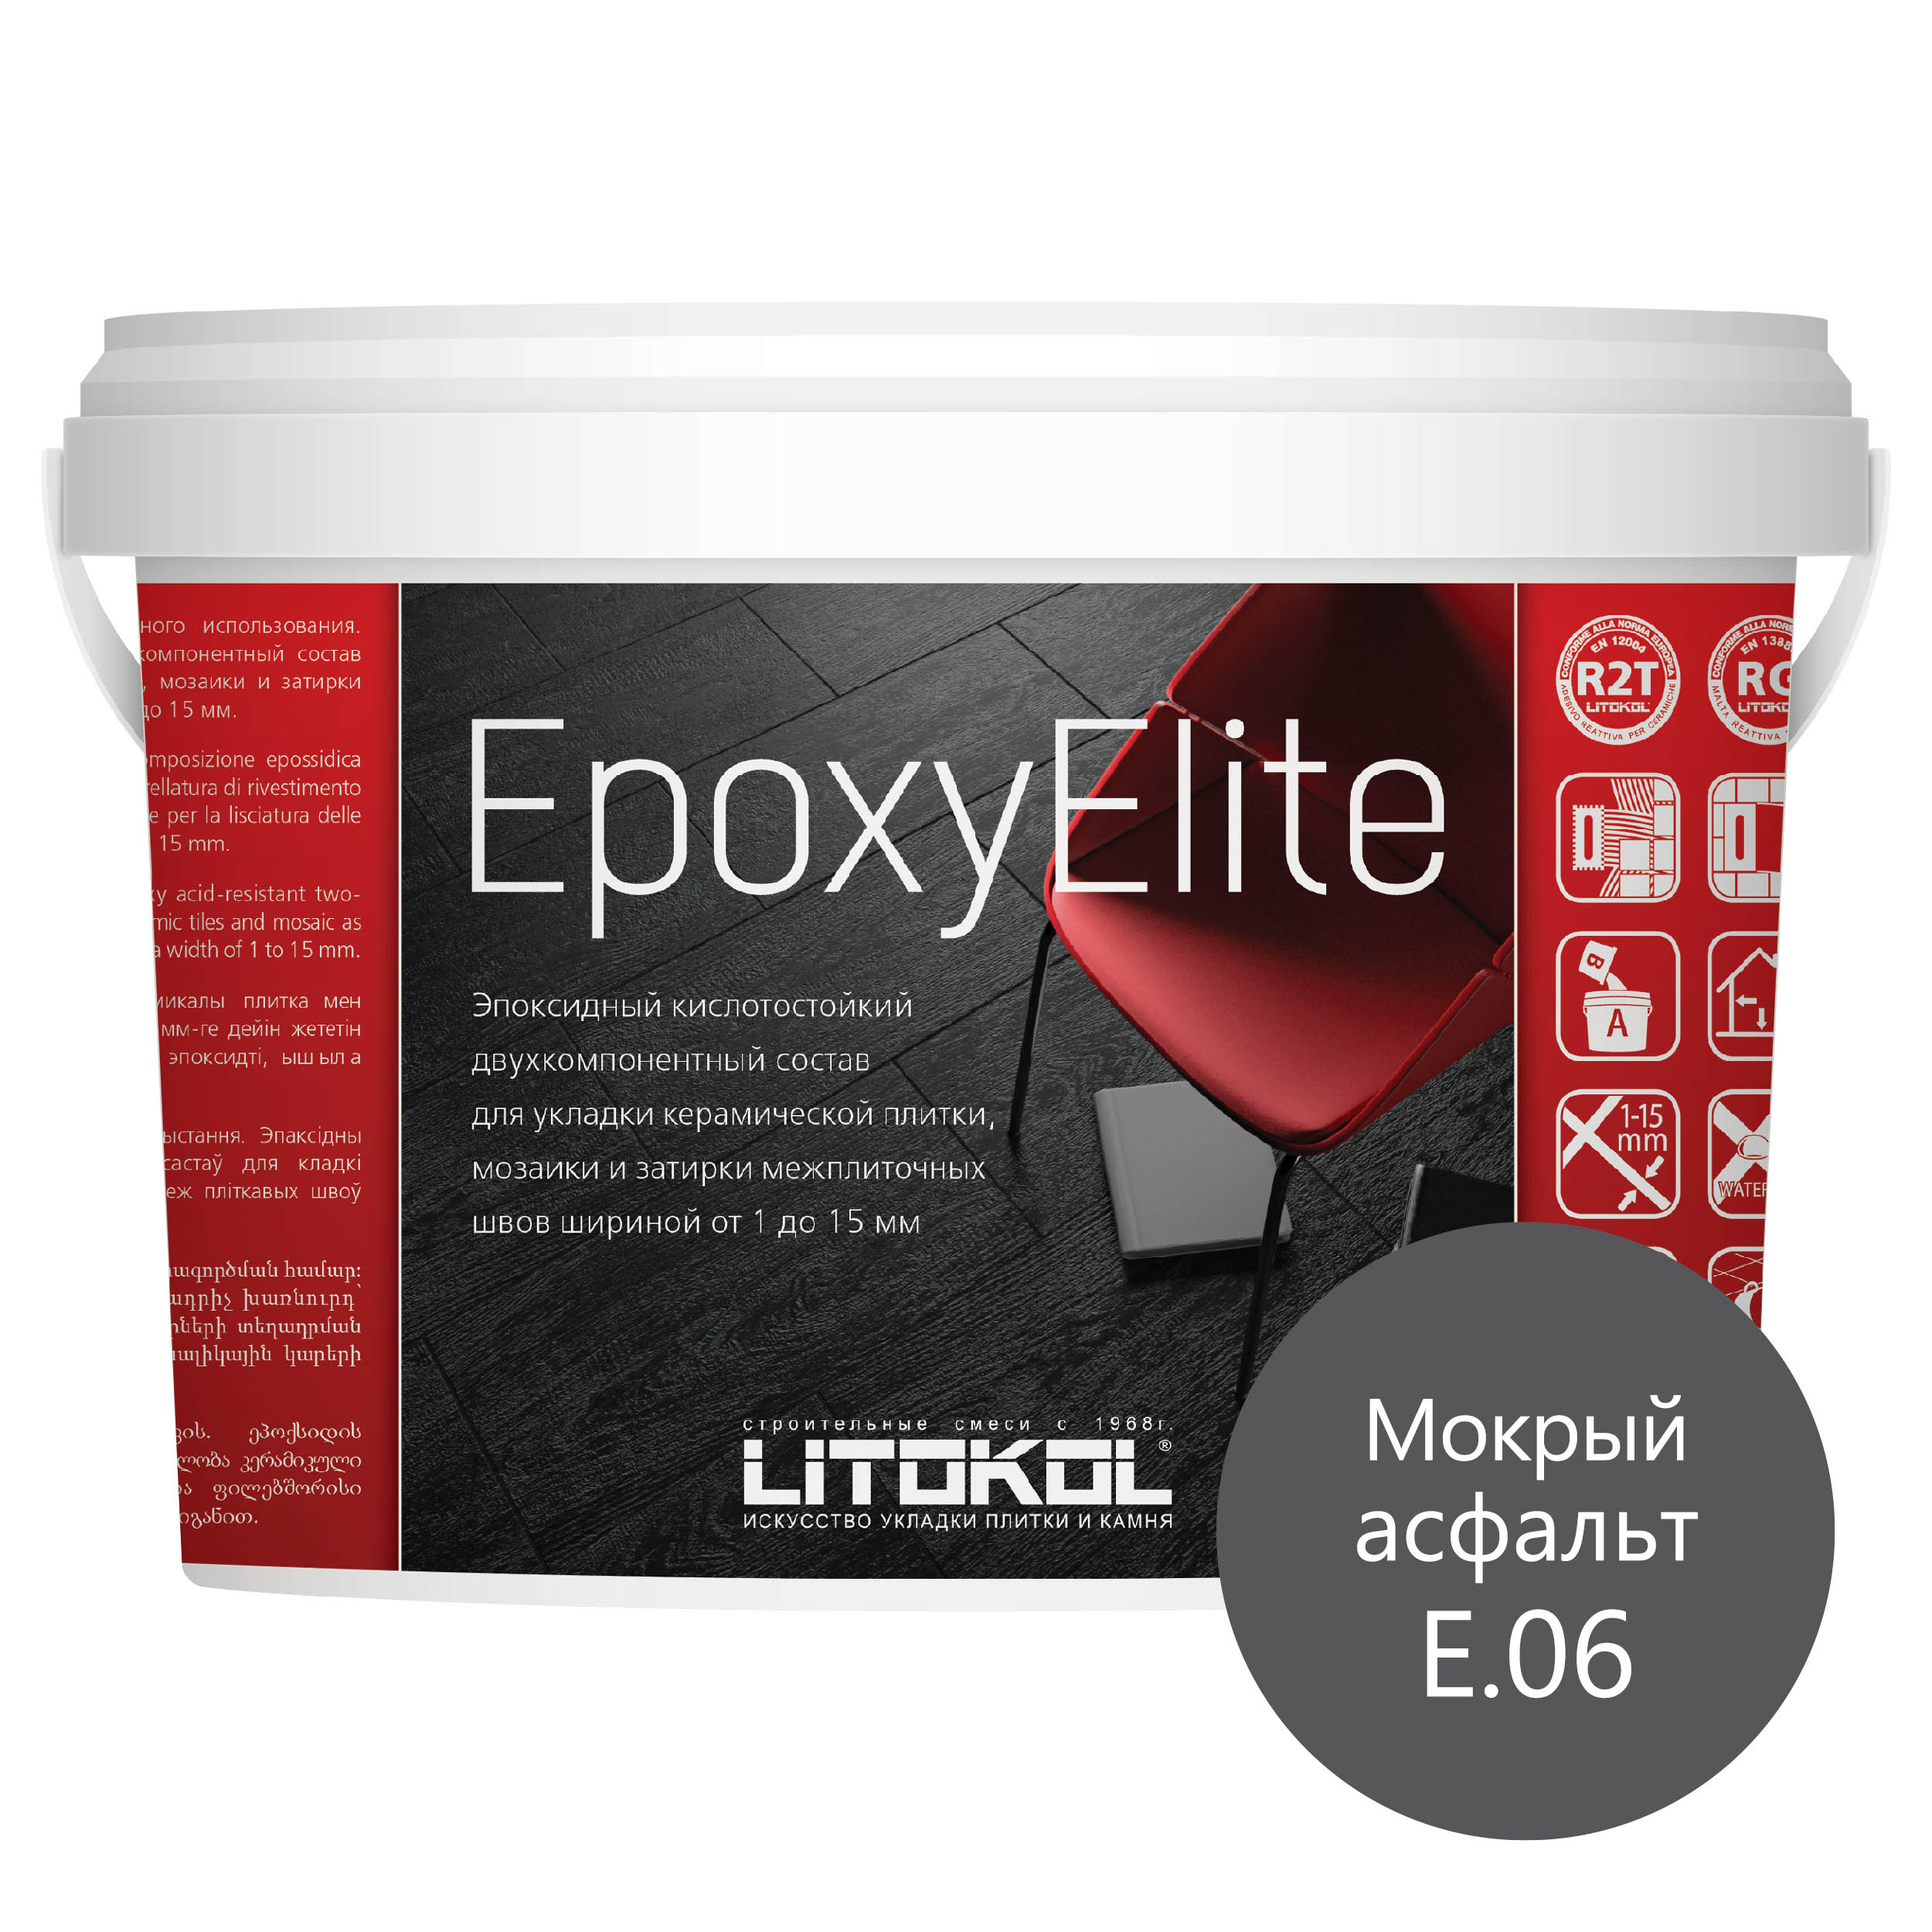 Затирка эпоксидная LITOKOL EpoxyElite E.06 Мокрый асфальт 2 кг эпоксидный состав для укладки и затирки мозаики керамической плитки litokol